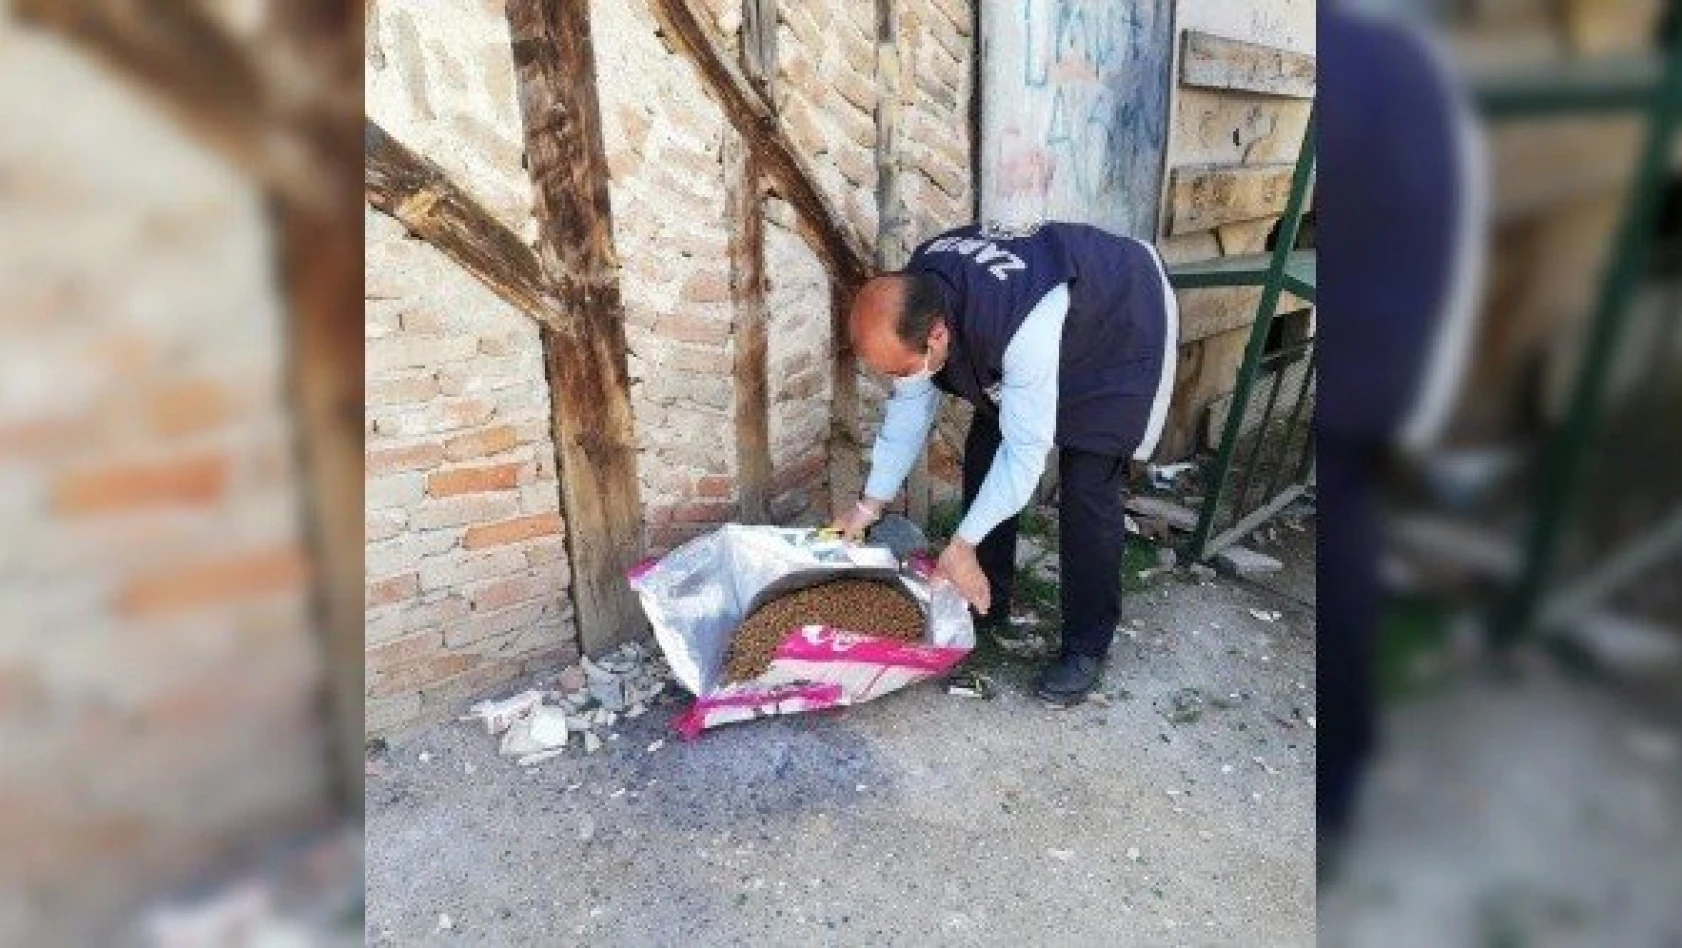 Taşköprü Belediyesi, sokak hayvanlarını besledi